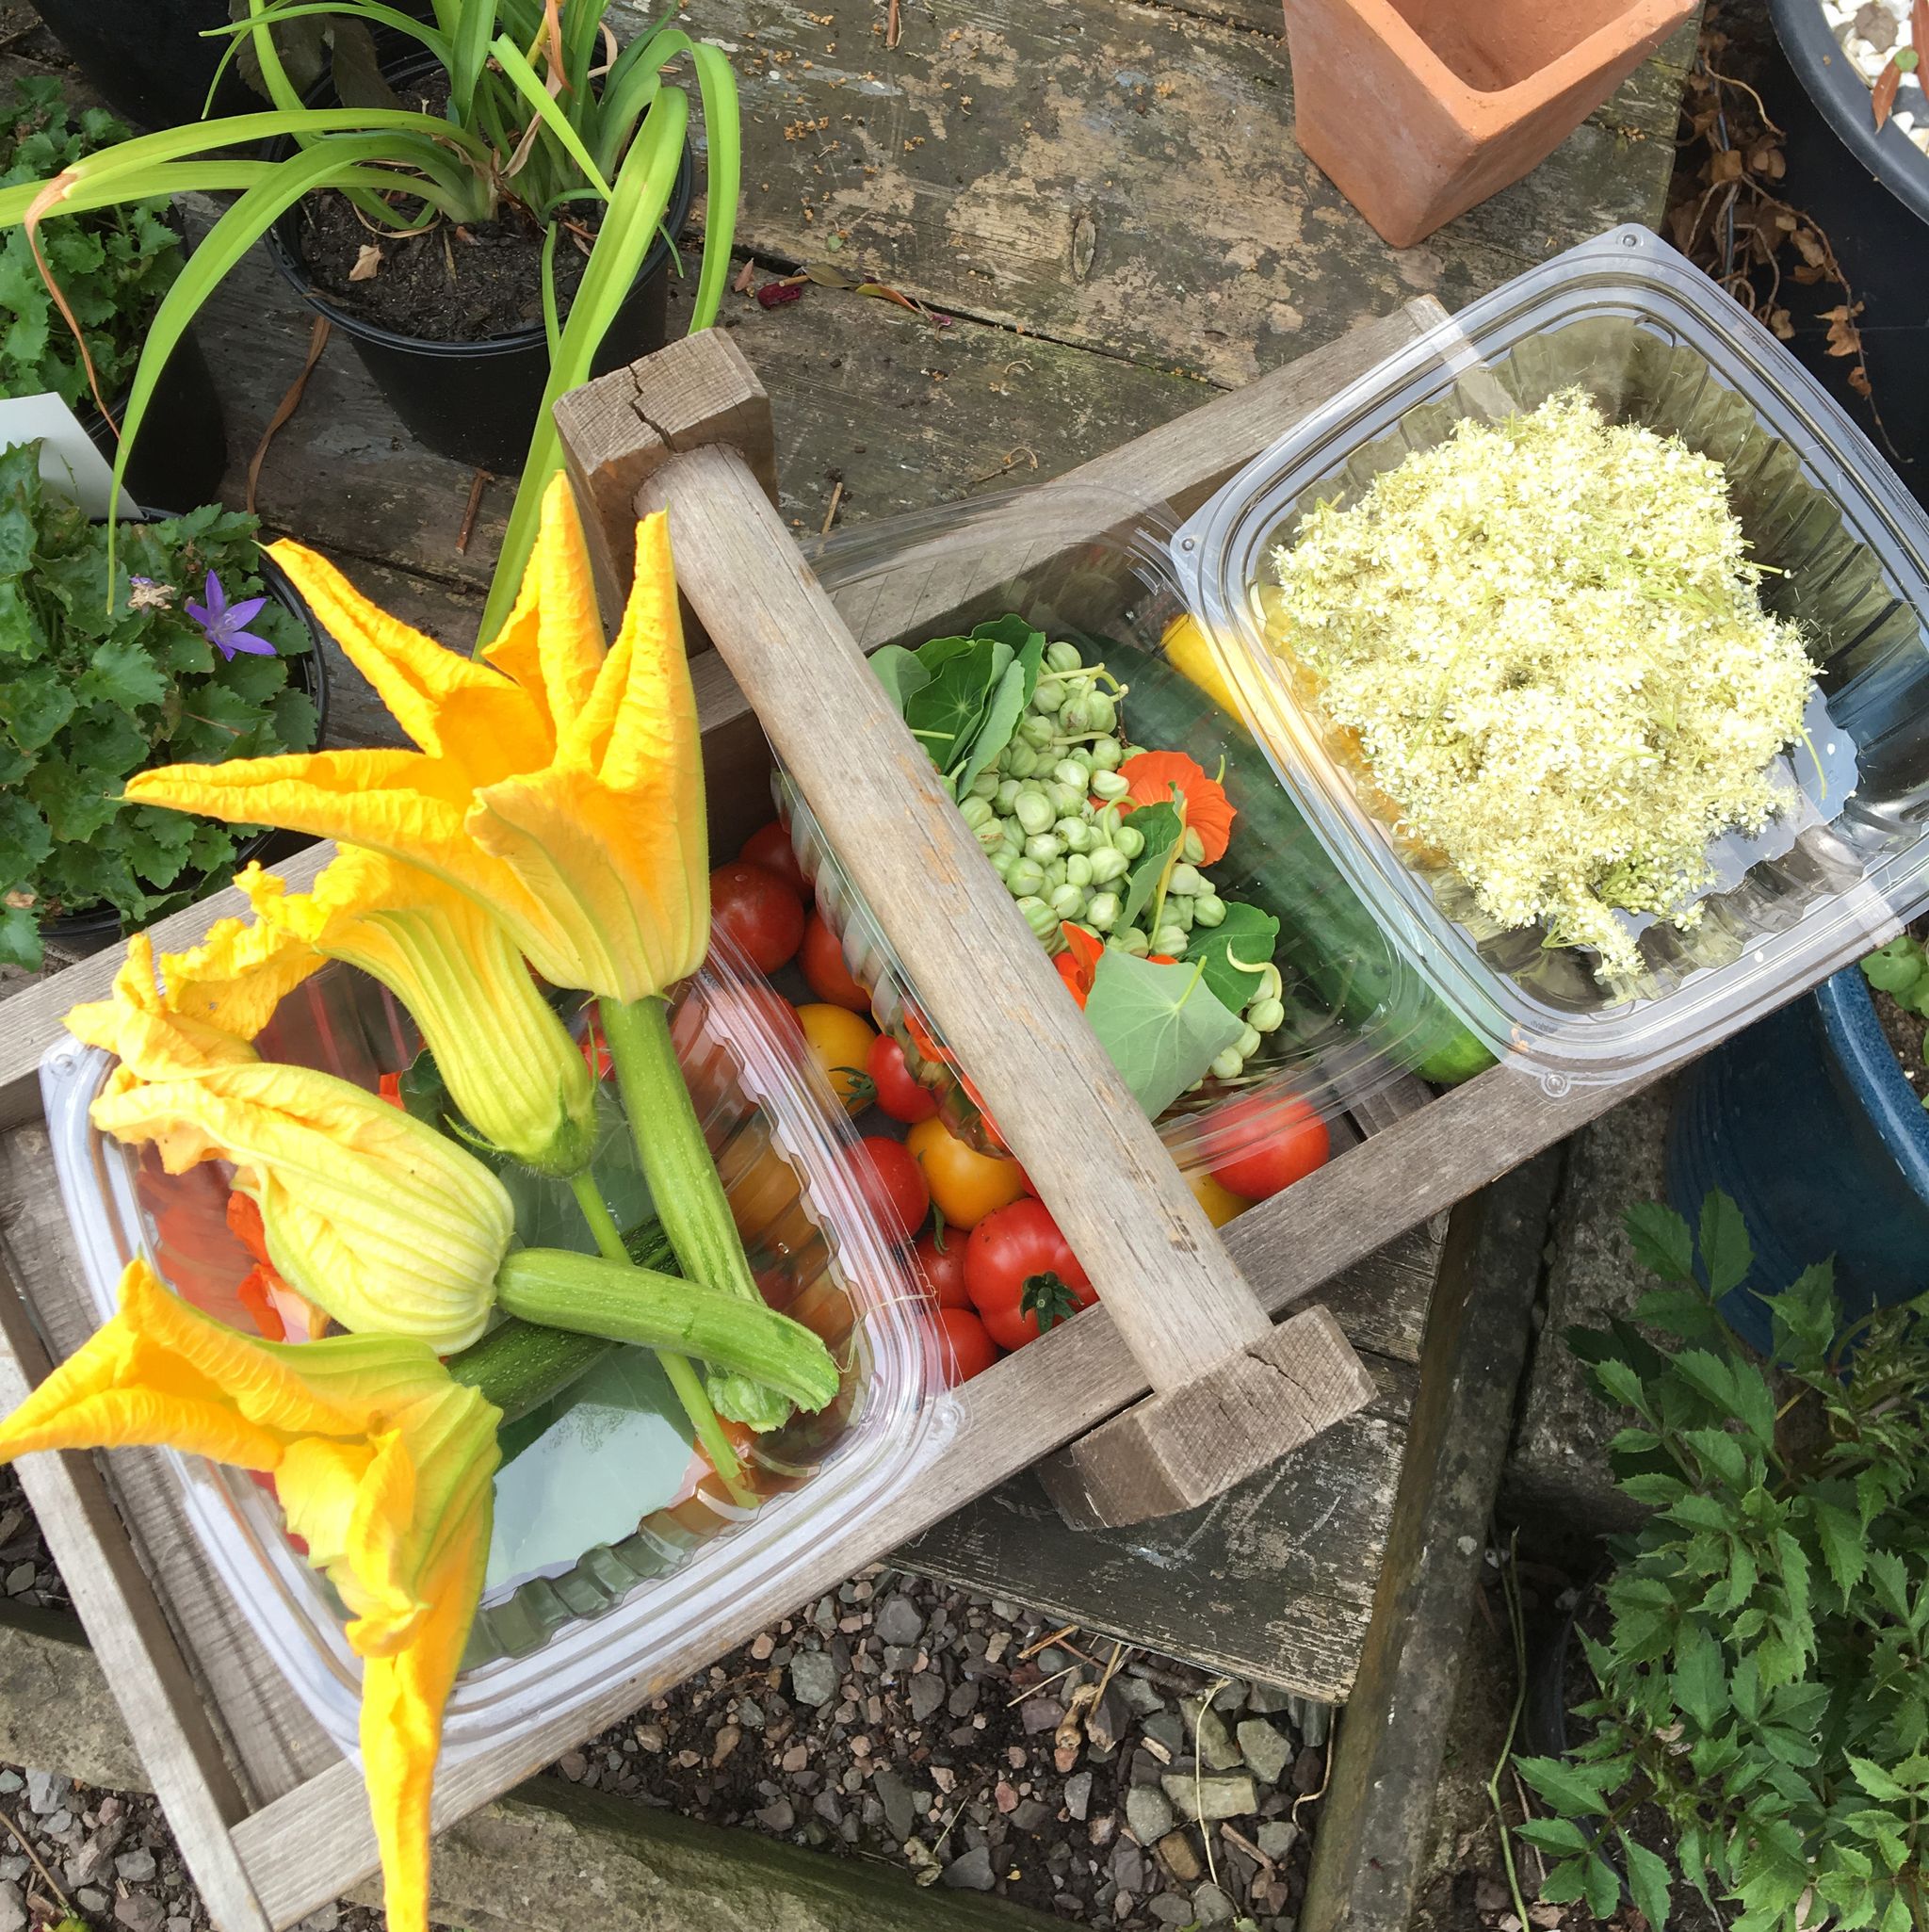 Vegetables in a basket outside